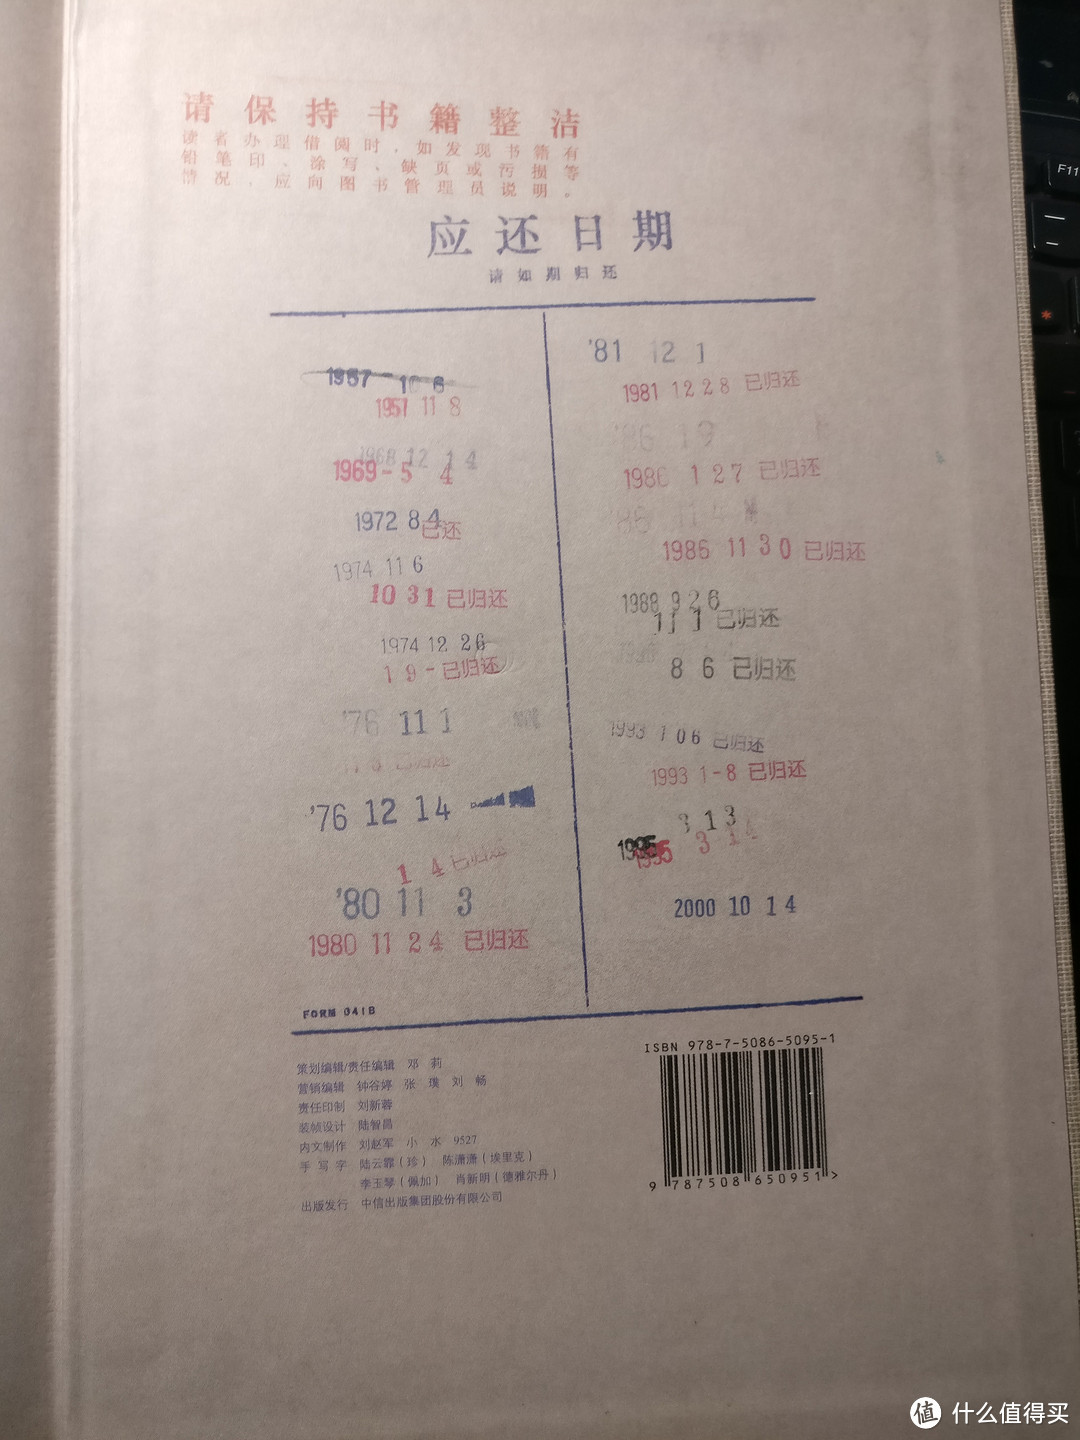 一本捡来的破书：《S. 忒修斯之船》简体中文典藏复刻版 晒单